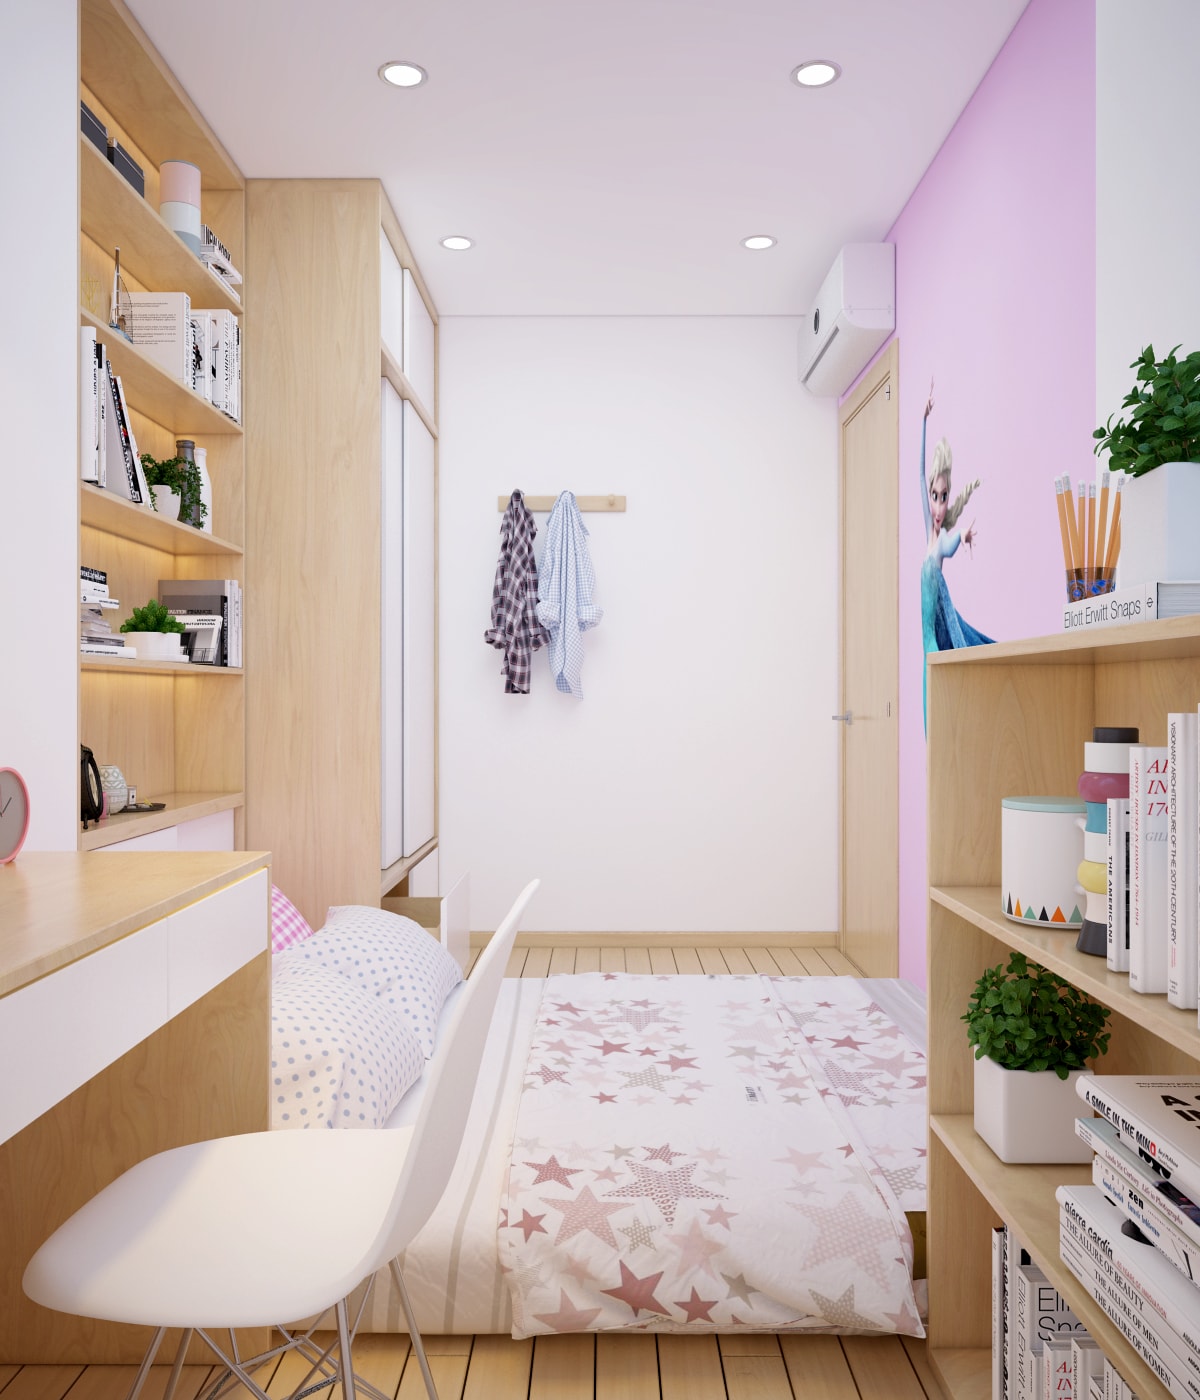 View 2 - Thiết kế nội thất phòng ngủ bé gái chung cư